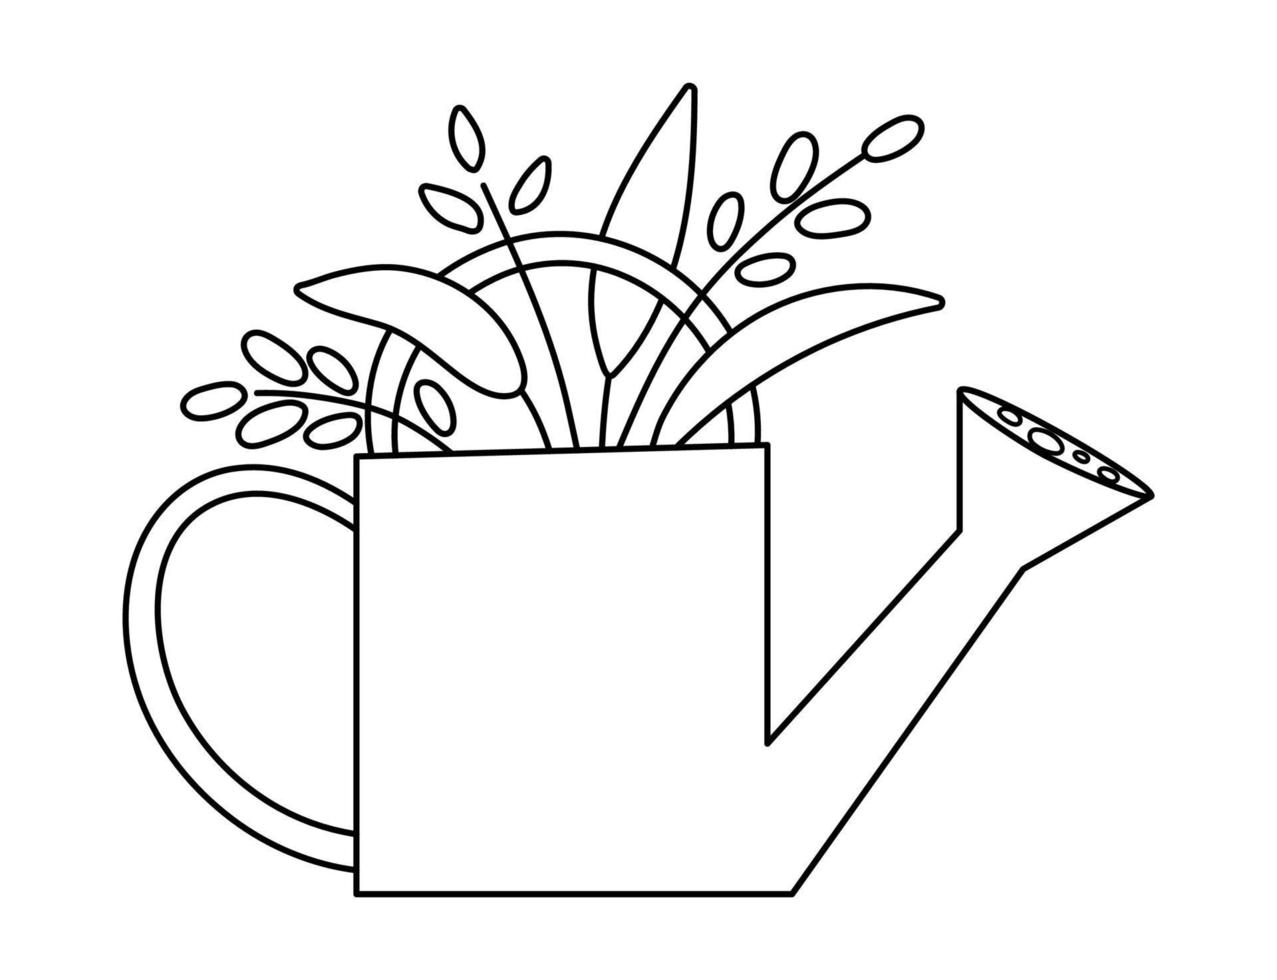 vecteur mignon arrosoir noir et blanc avec icône de plantes isolé sur fond blanc. contour de l'illustration de l'outil de jardin de printemps. image drôle d'équipement de jardinage ou page de coloriage pour les enfants.